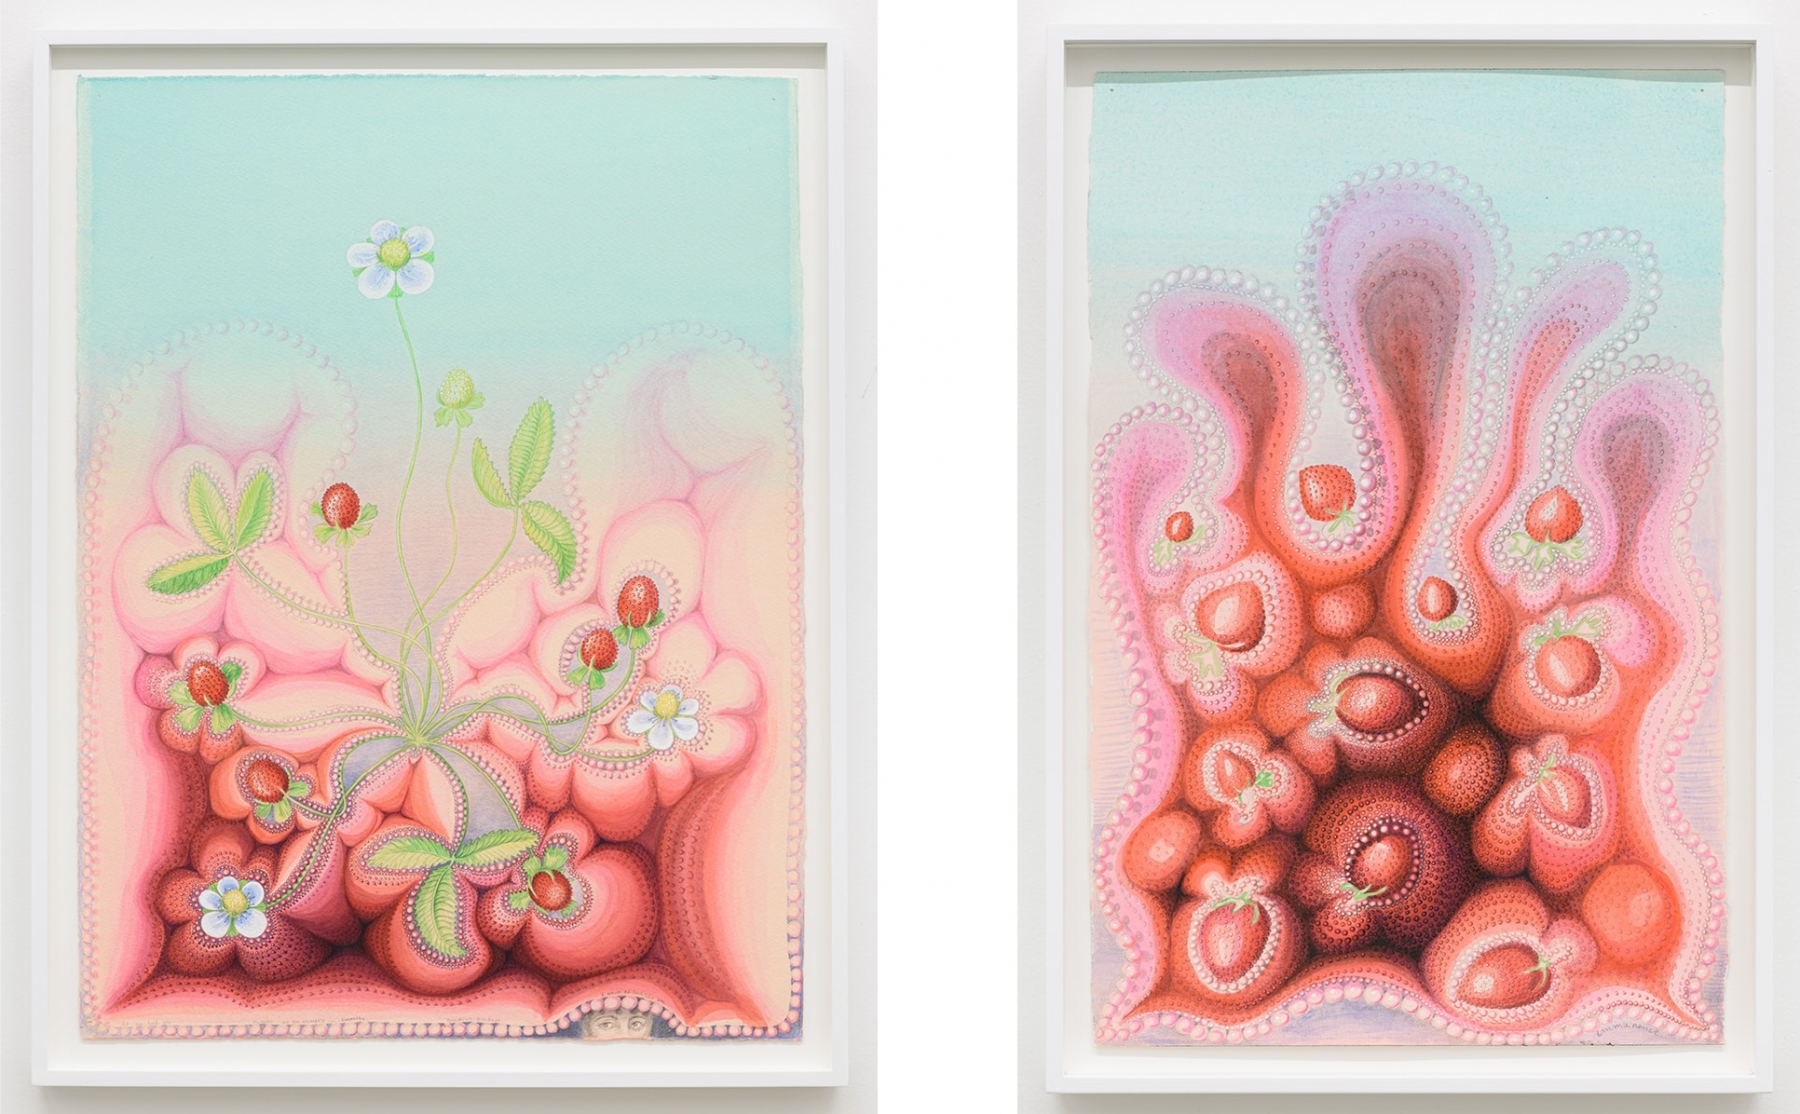 Left:&nbsp;Kinke Kooi,&nbsp;Mimesis (2), 2016;&nbsp;acrylic, gouache, colored pencil on paper,&nbsp;30h x 22 7/16w in/&nbsp;76.20h x 56.99w cm

Right:&nbsp;Kinke Kooi,&nbsp;Immanence (2), 2018;&nbsp;acrylic, gouache, colored pencil on paper,&nbsp;18 1/8h x 11 13/16w in/&nbsp;46.04h x 30w cm

Inquire